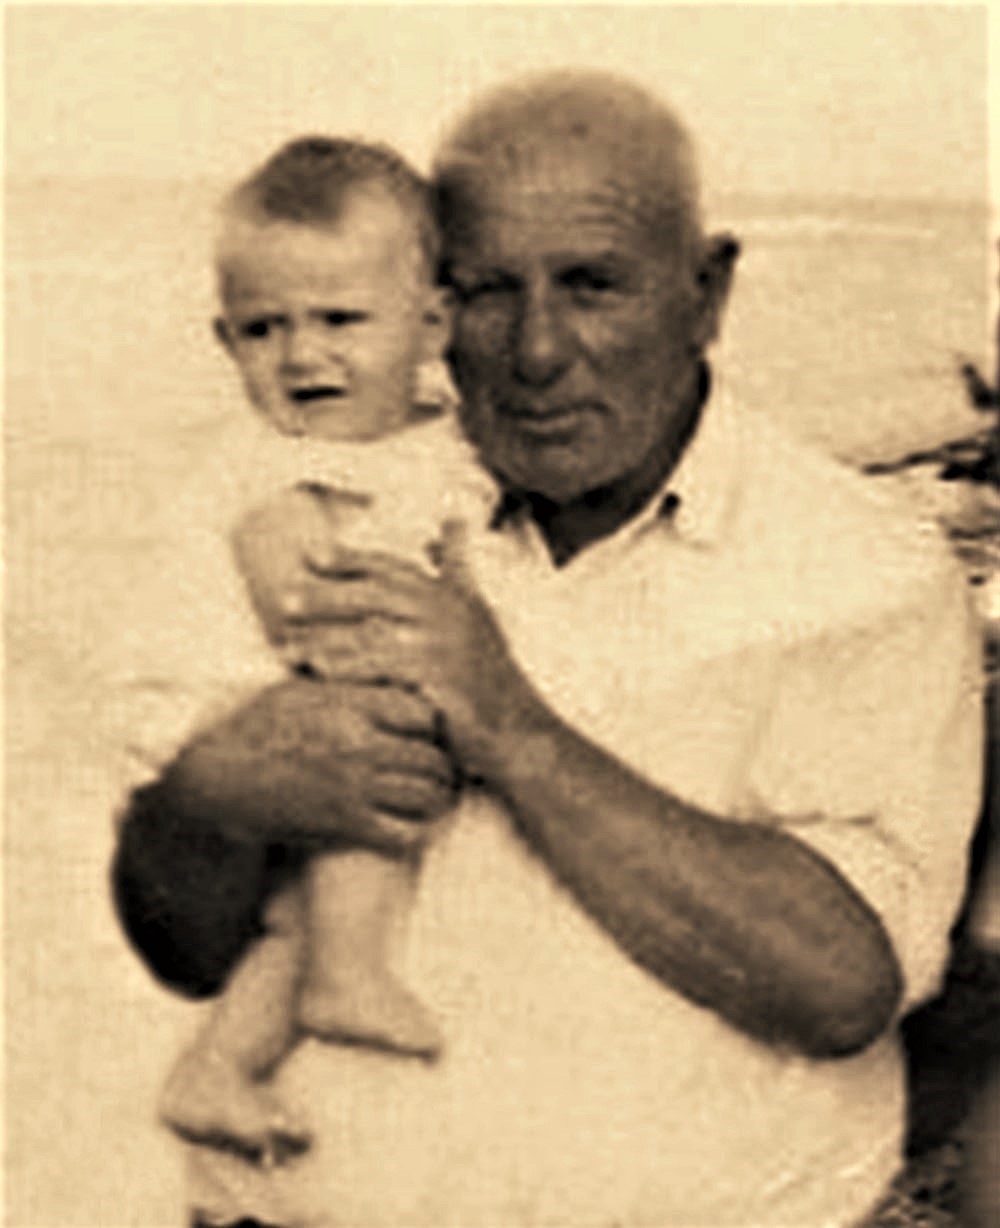 Në krahët e një gjyshi të rigjetur - Viti 1972